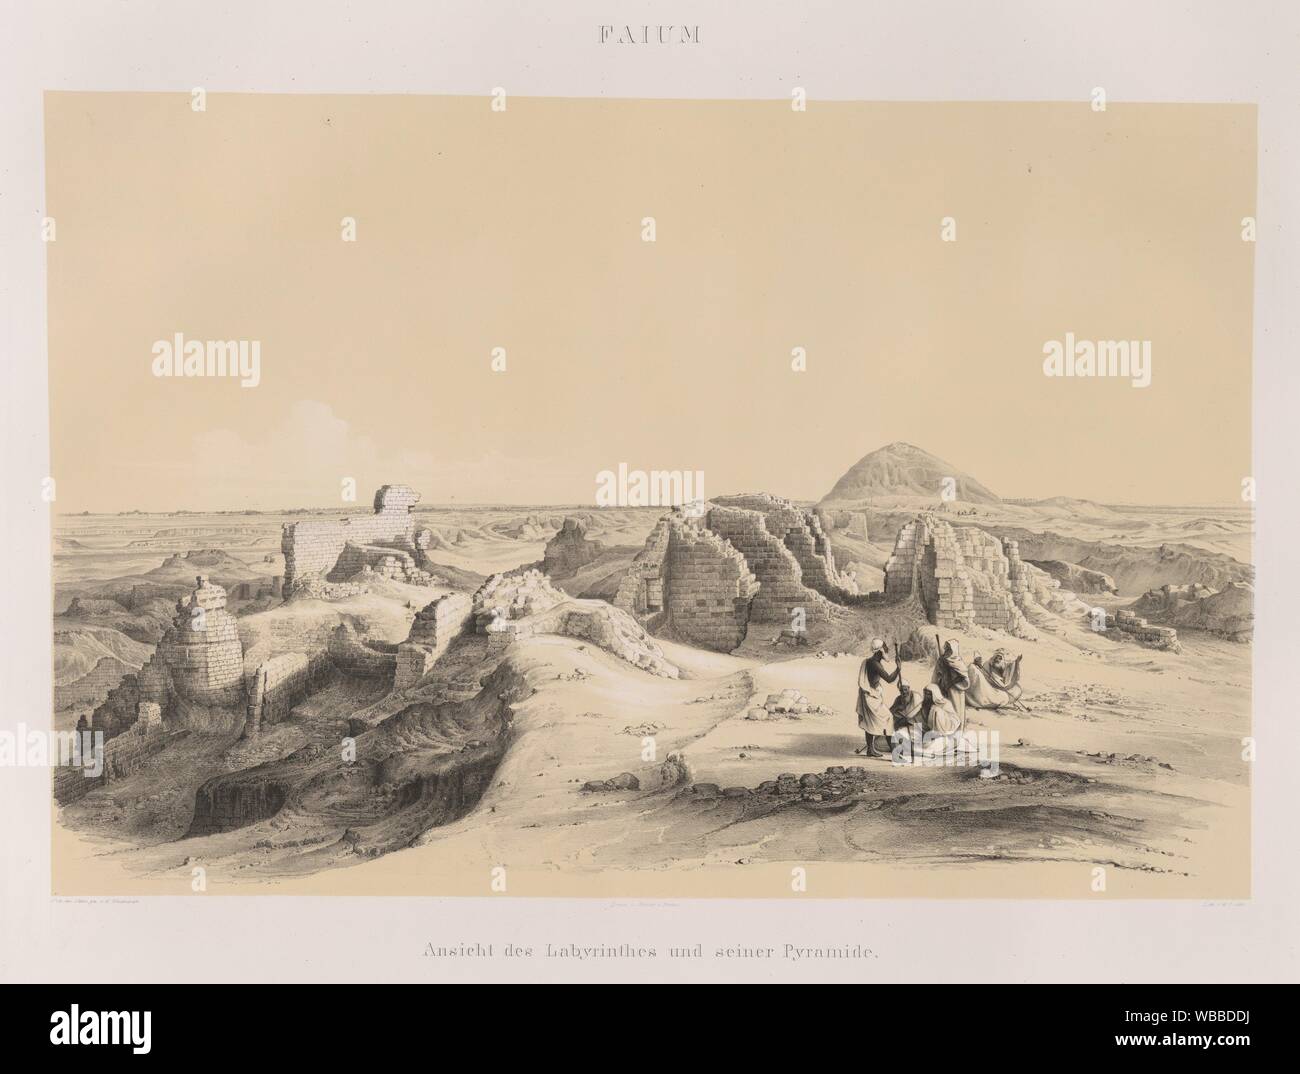 Faium [Fayyûm]: Ansicht des Labyrinthes und seiner Pyramide. Lepsius, Richard, 1810-1884 (Author) Seidenbach, E. (Artist) Mercier (Printer) Loeillot, Stock Photo